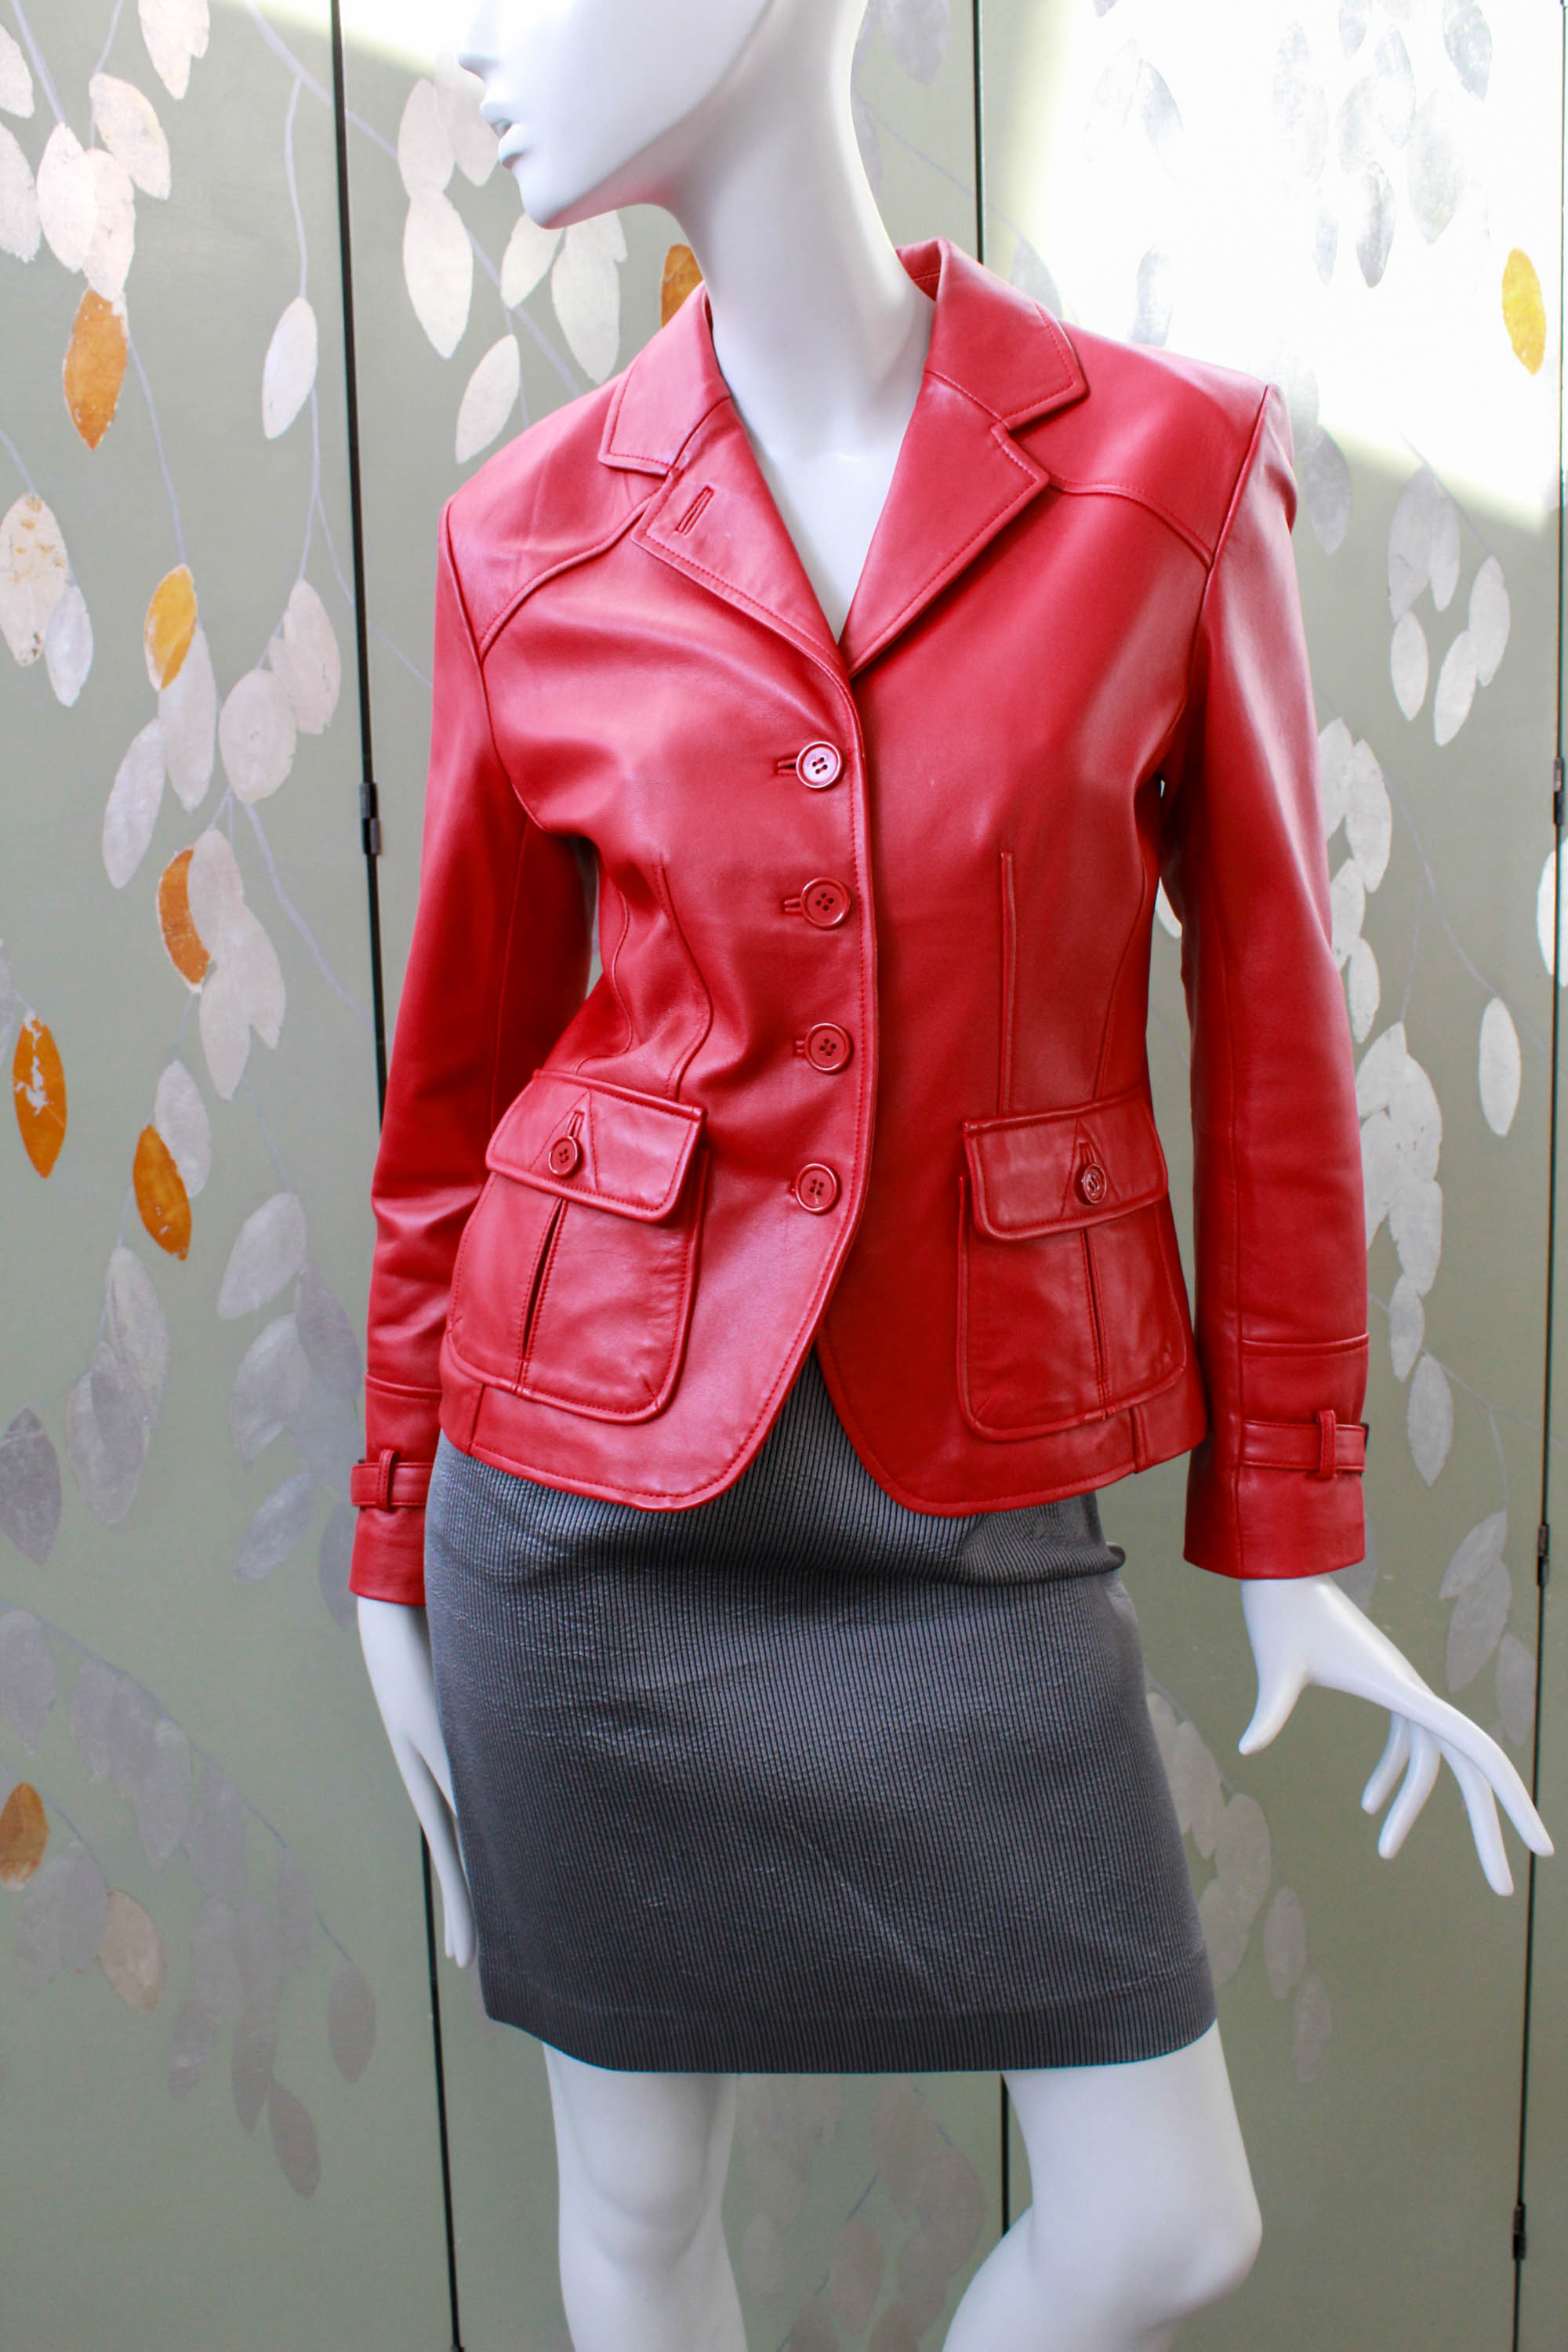 Vintage Red Leather Blazer/Jacket, Small – Ian Drummond Vintage